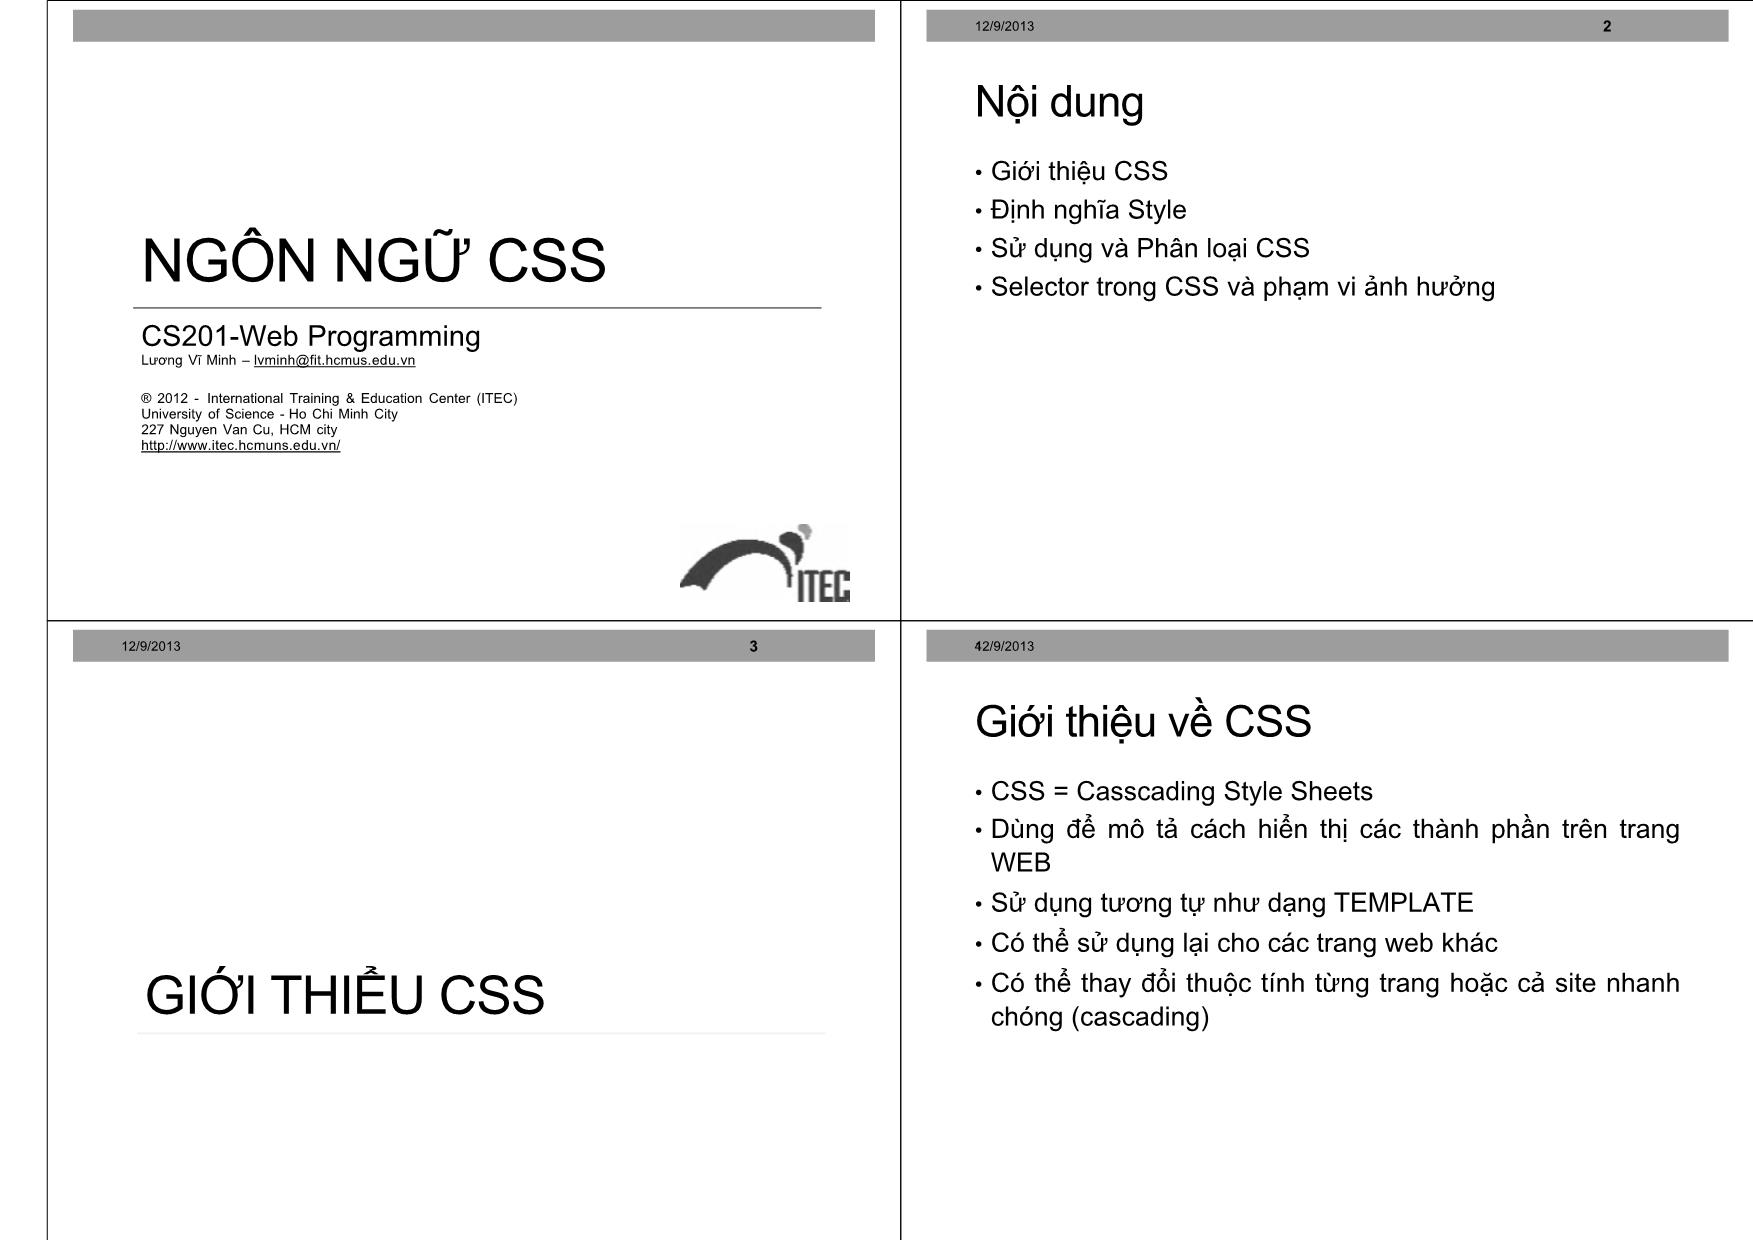 Ngôn ngữ CSS trang 1